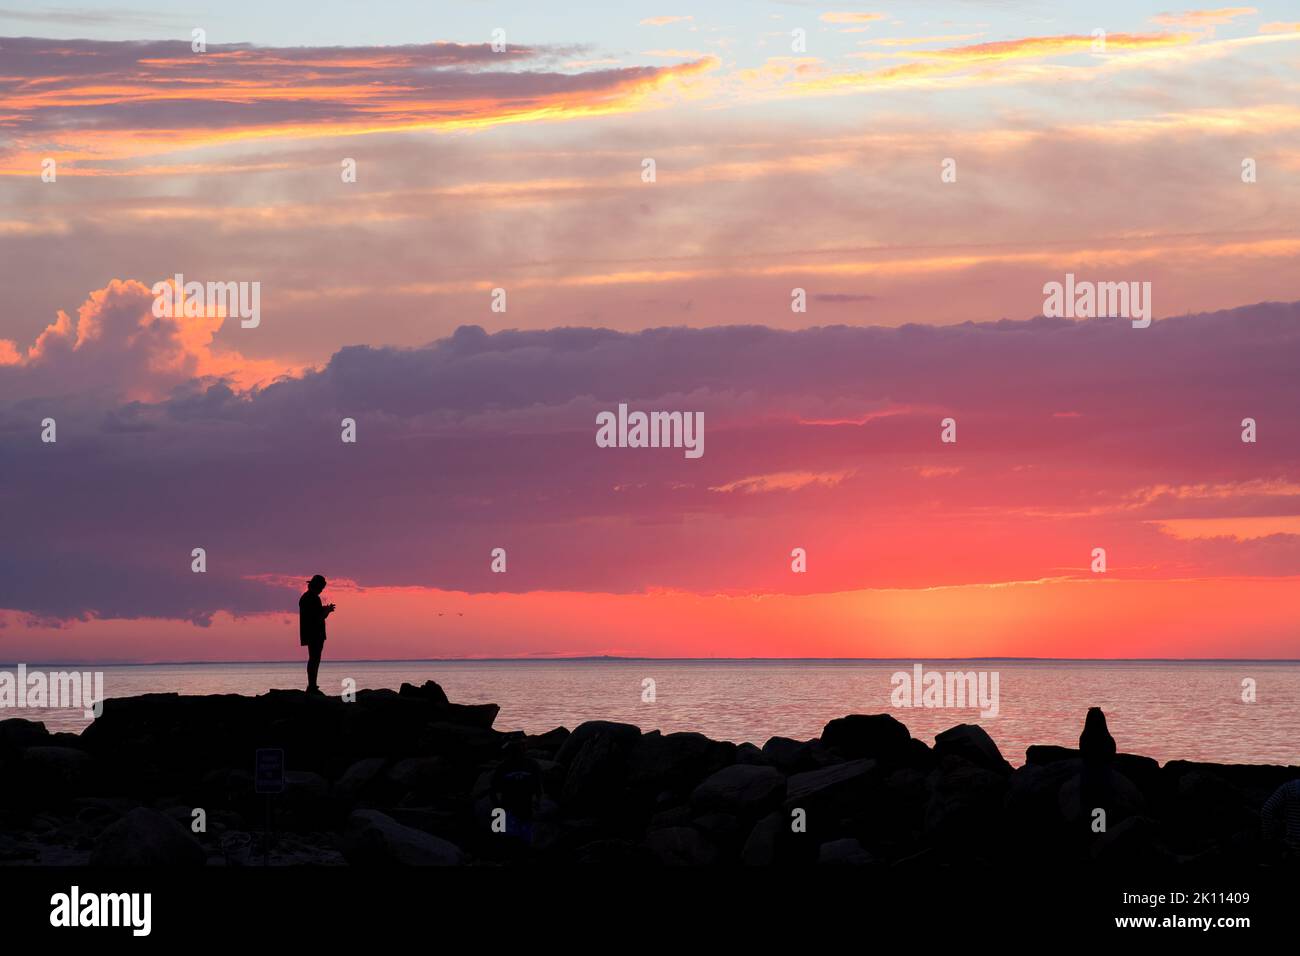 Dramatische Szene an der Küste von Neuengland. Dunkle Silhouetten zweier unverkennbarer Menschen auf Wellenfelsen am Cape Cod Beach, die den farbenfrohen Sonnenuntergang betrachten. Stockfoto